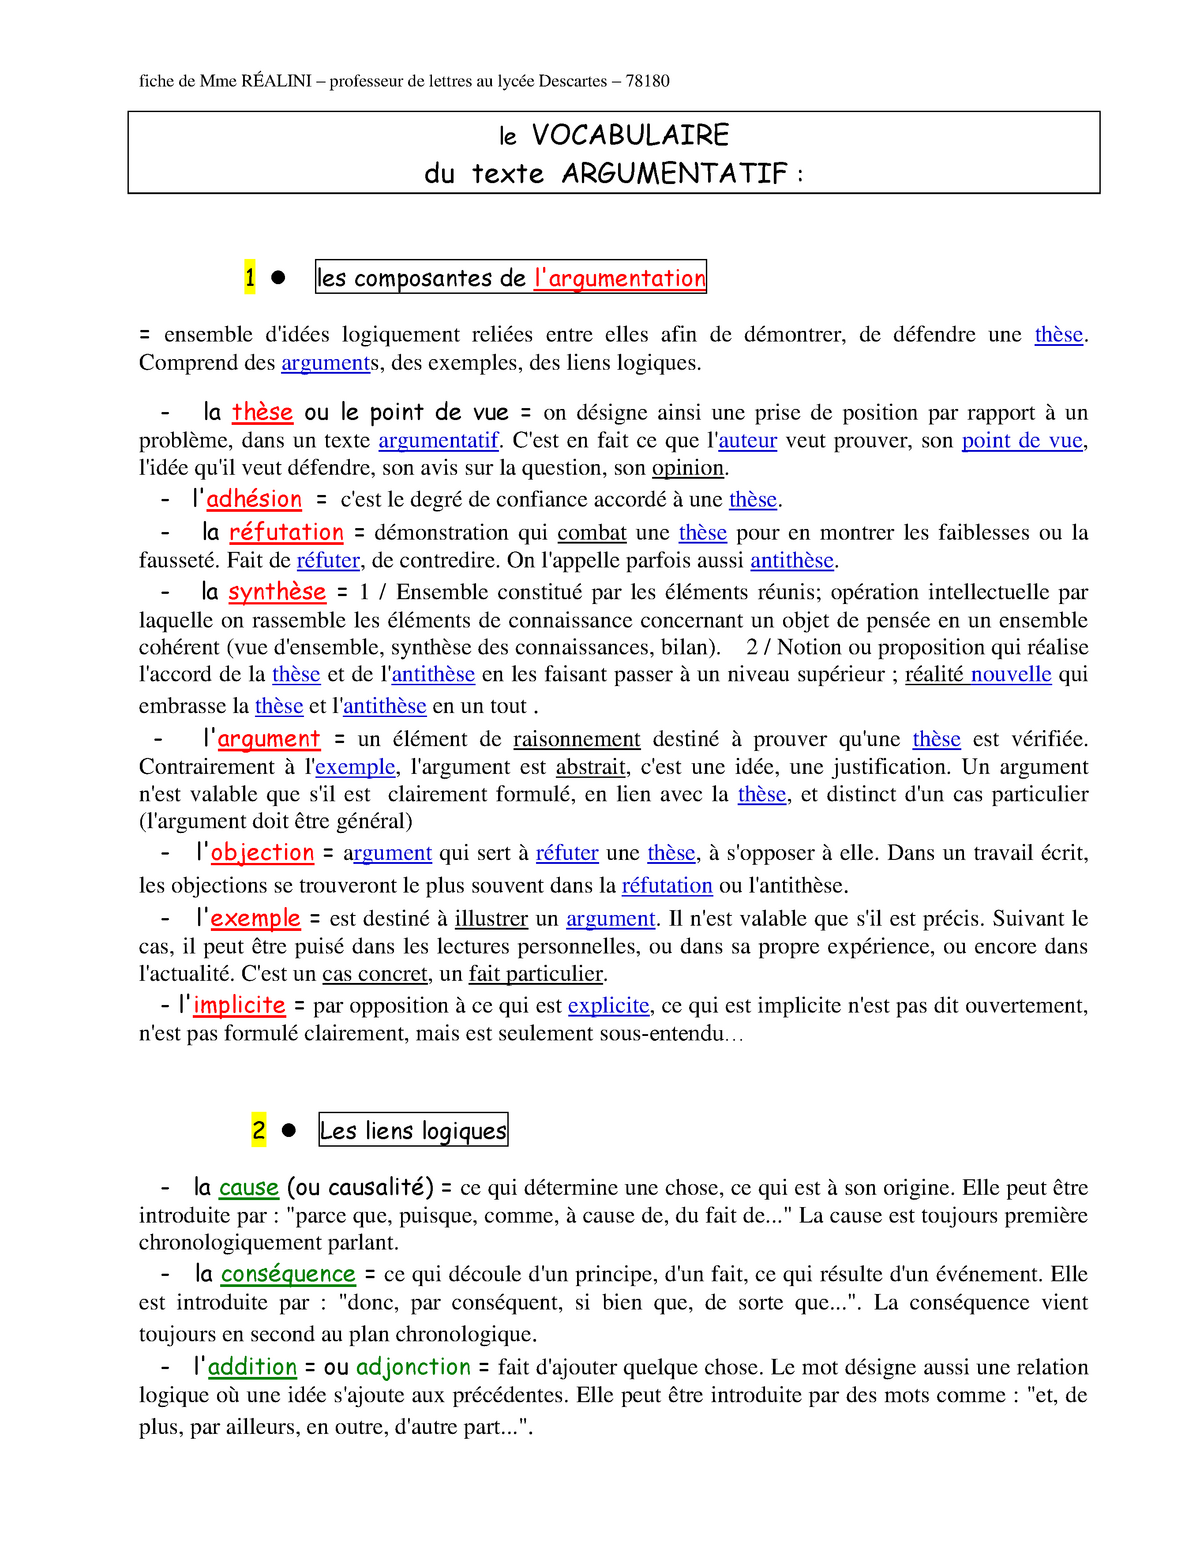 Fiche Vocabulaire De Largumentation Le Vocabulaire Du Texte Argumentatif 1 Les Composantes De Studocu